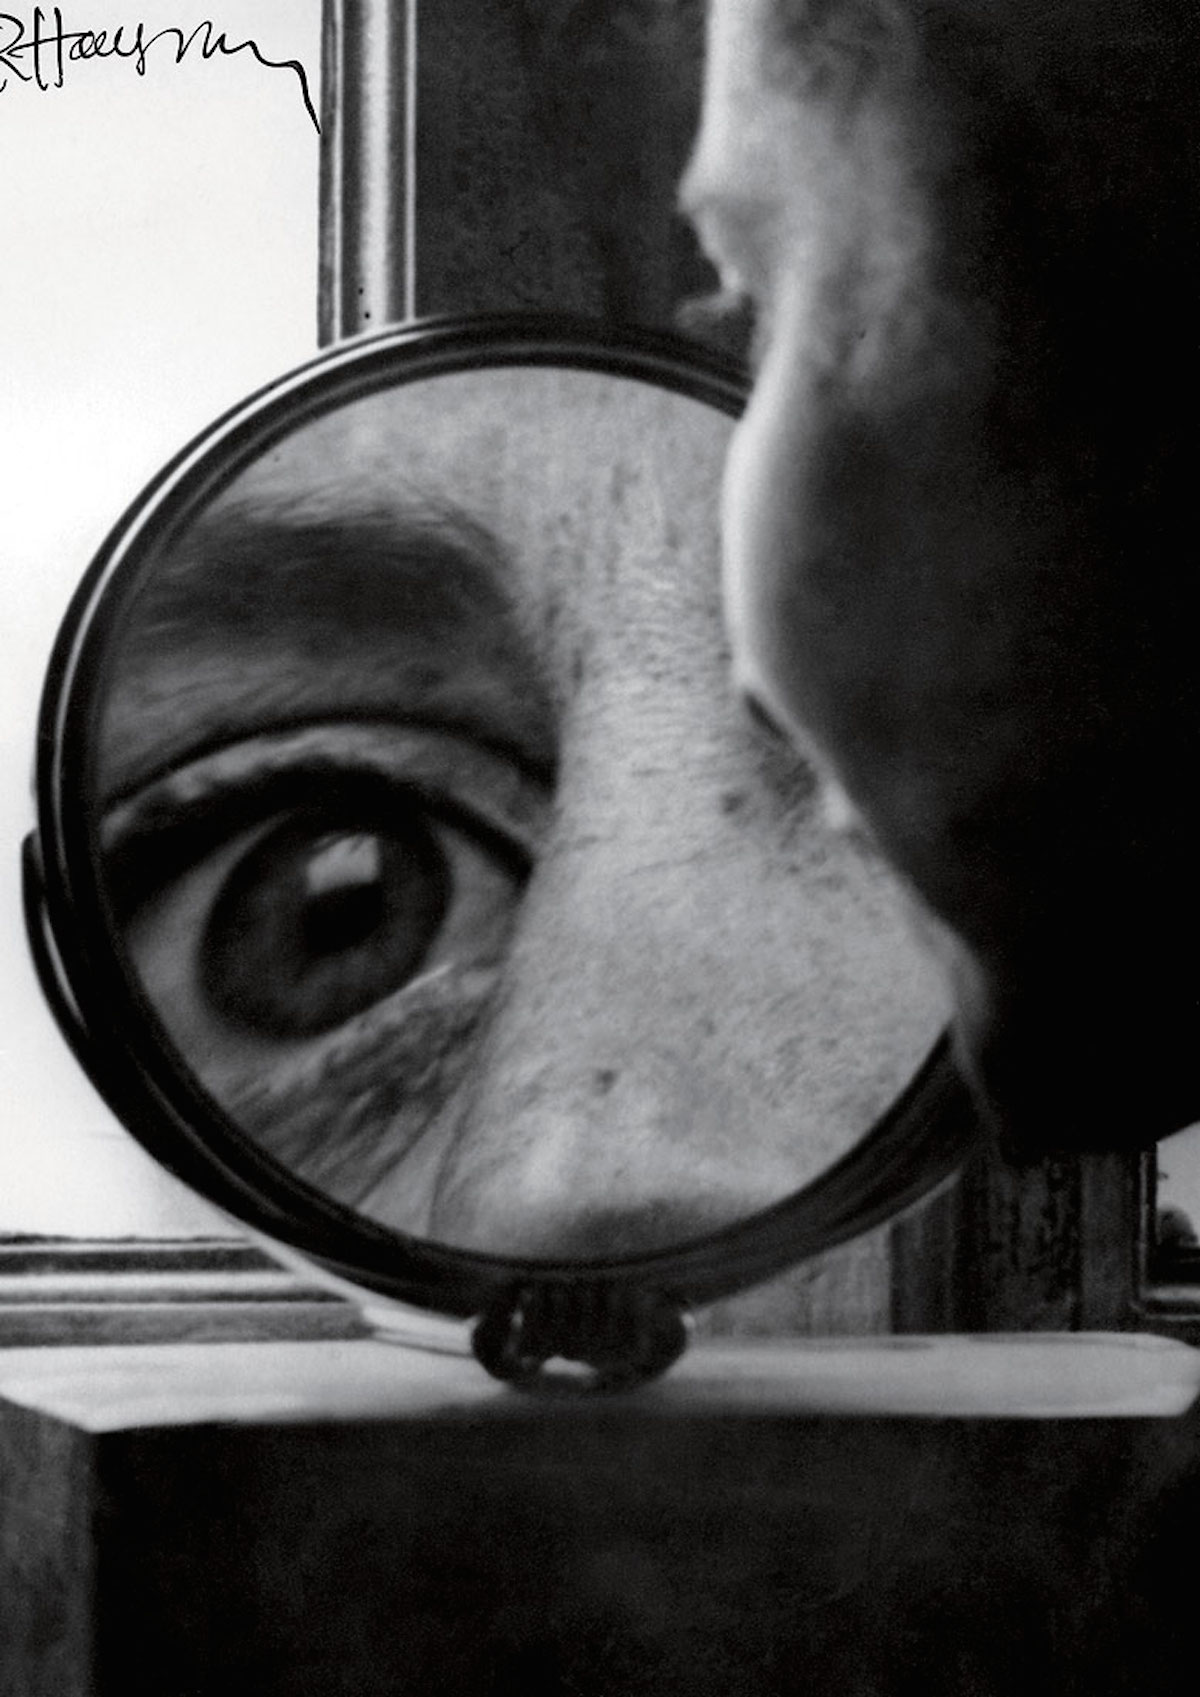 Regard dans le miroir 1930 Raoul Hausmann